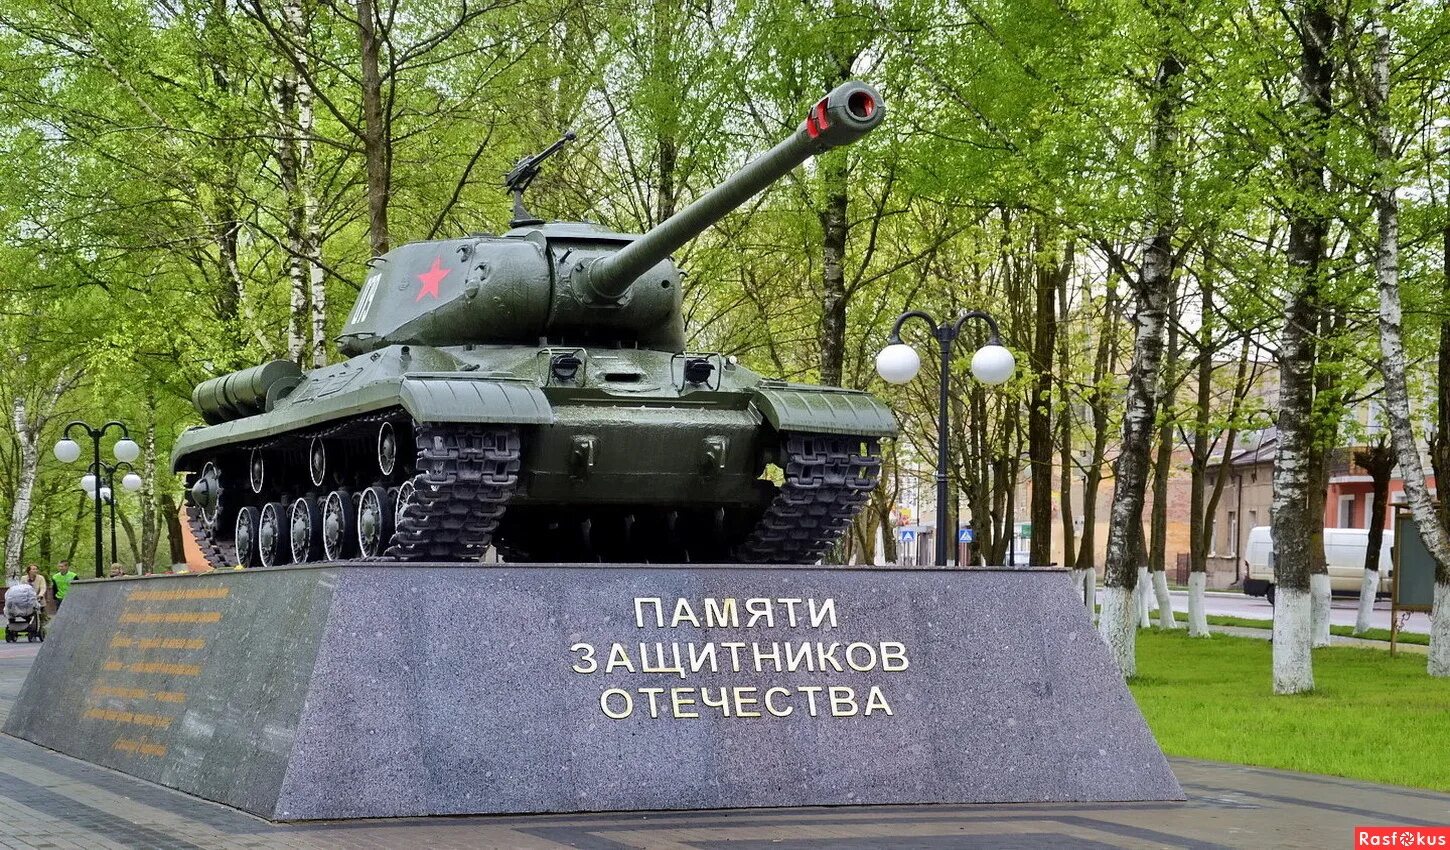 Памятник ис. Танк ИС-2. Танк памятник ИС-2. Танк ИС-2 (Иосиф Сталин). Танк ИС 2 памятник Липецк.